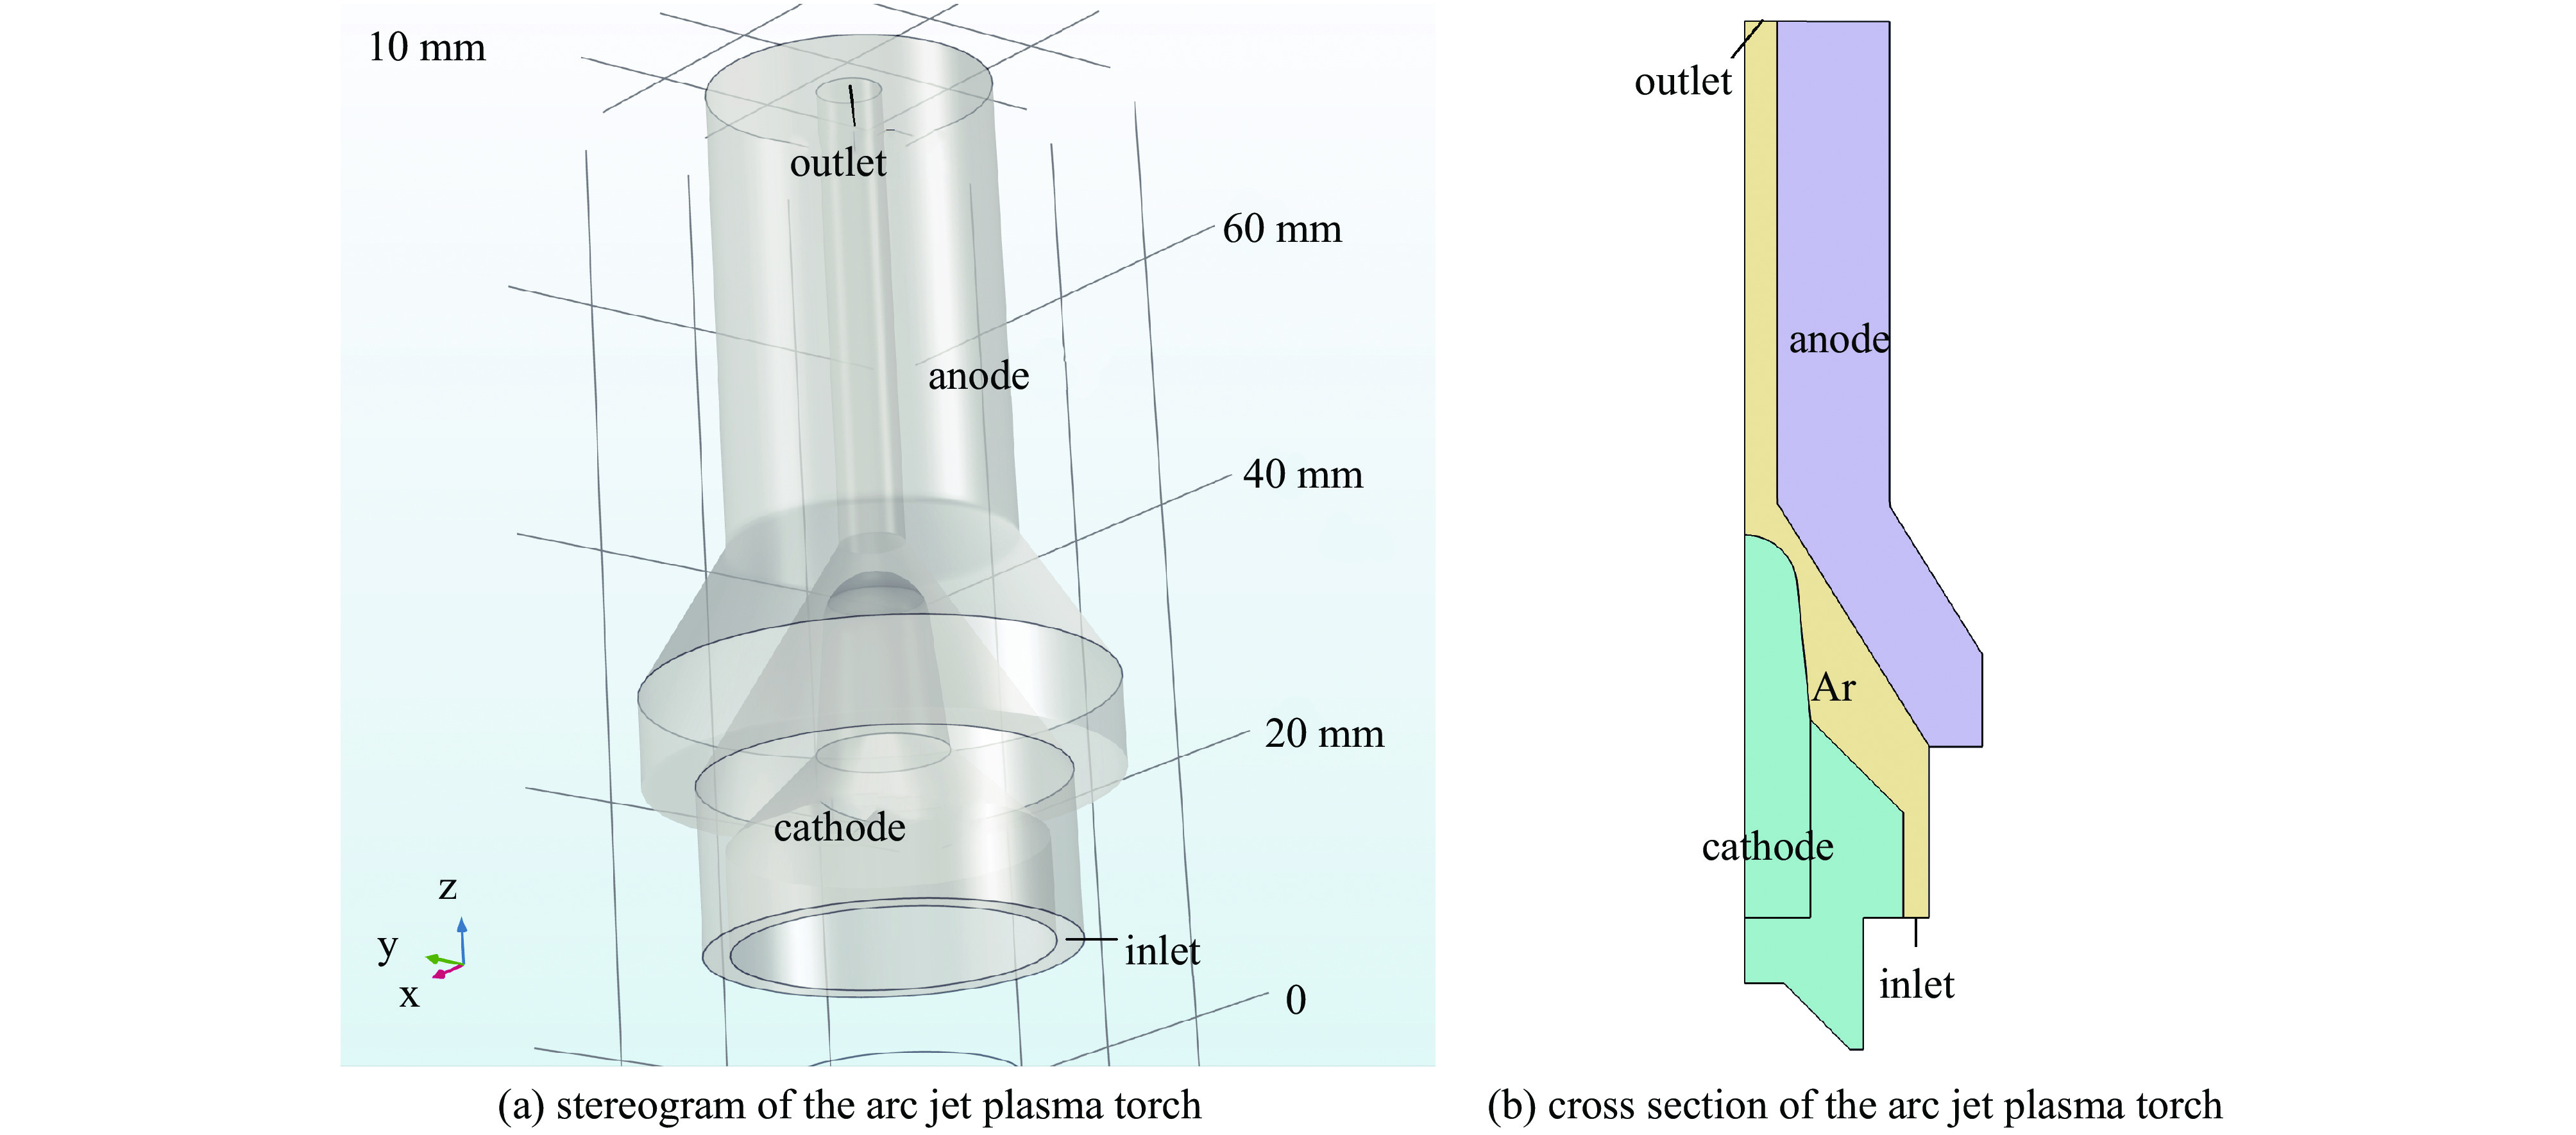 Structure diagram of arc jet plasma actuator